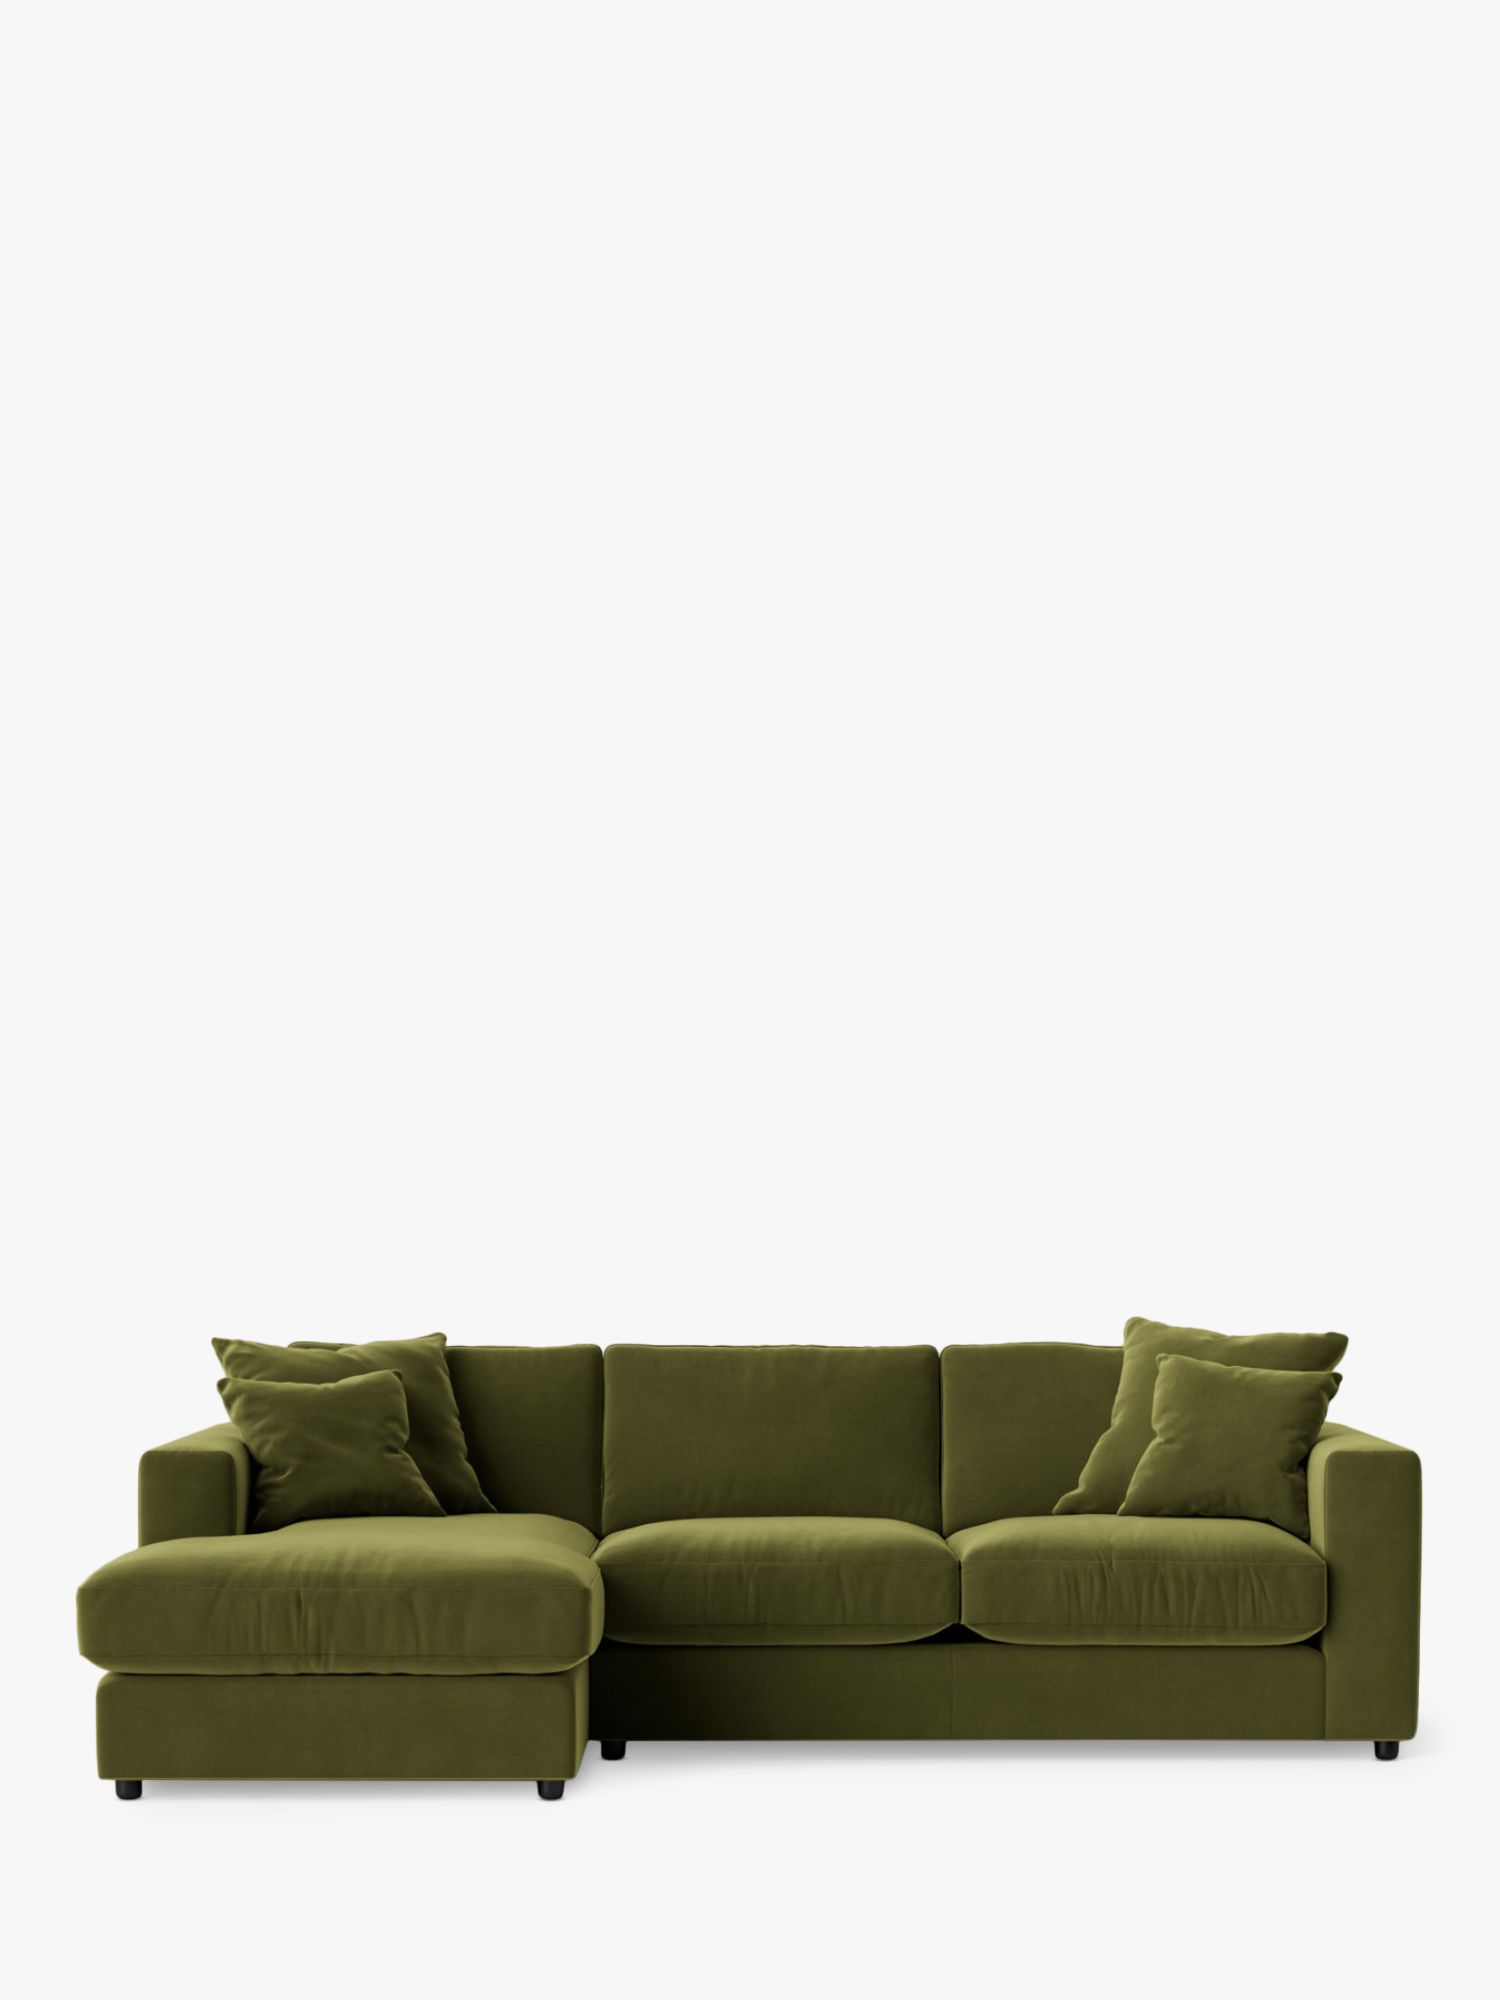 Althaea Range, Swoon Althaea Grand 4 Seater LHF Corner Sofa, Easy Velvet Fern